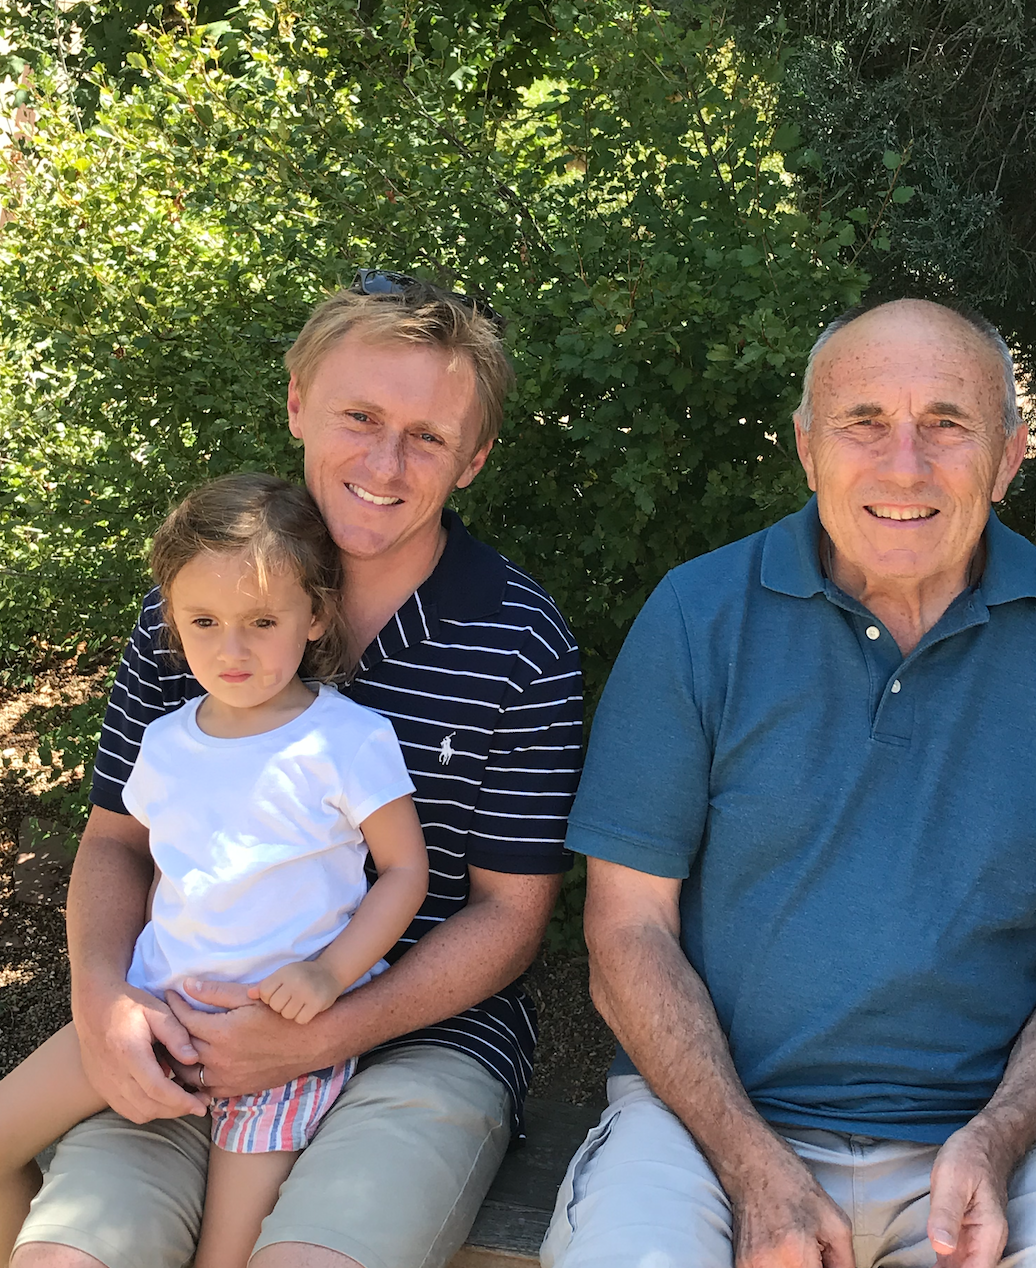 John , Ian & Libe (John's son & granddaughter), 
Denver, 
August 2019